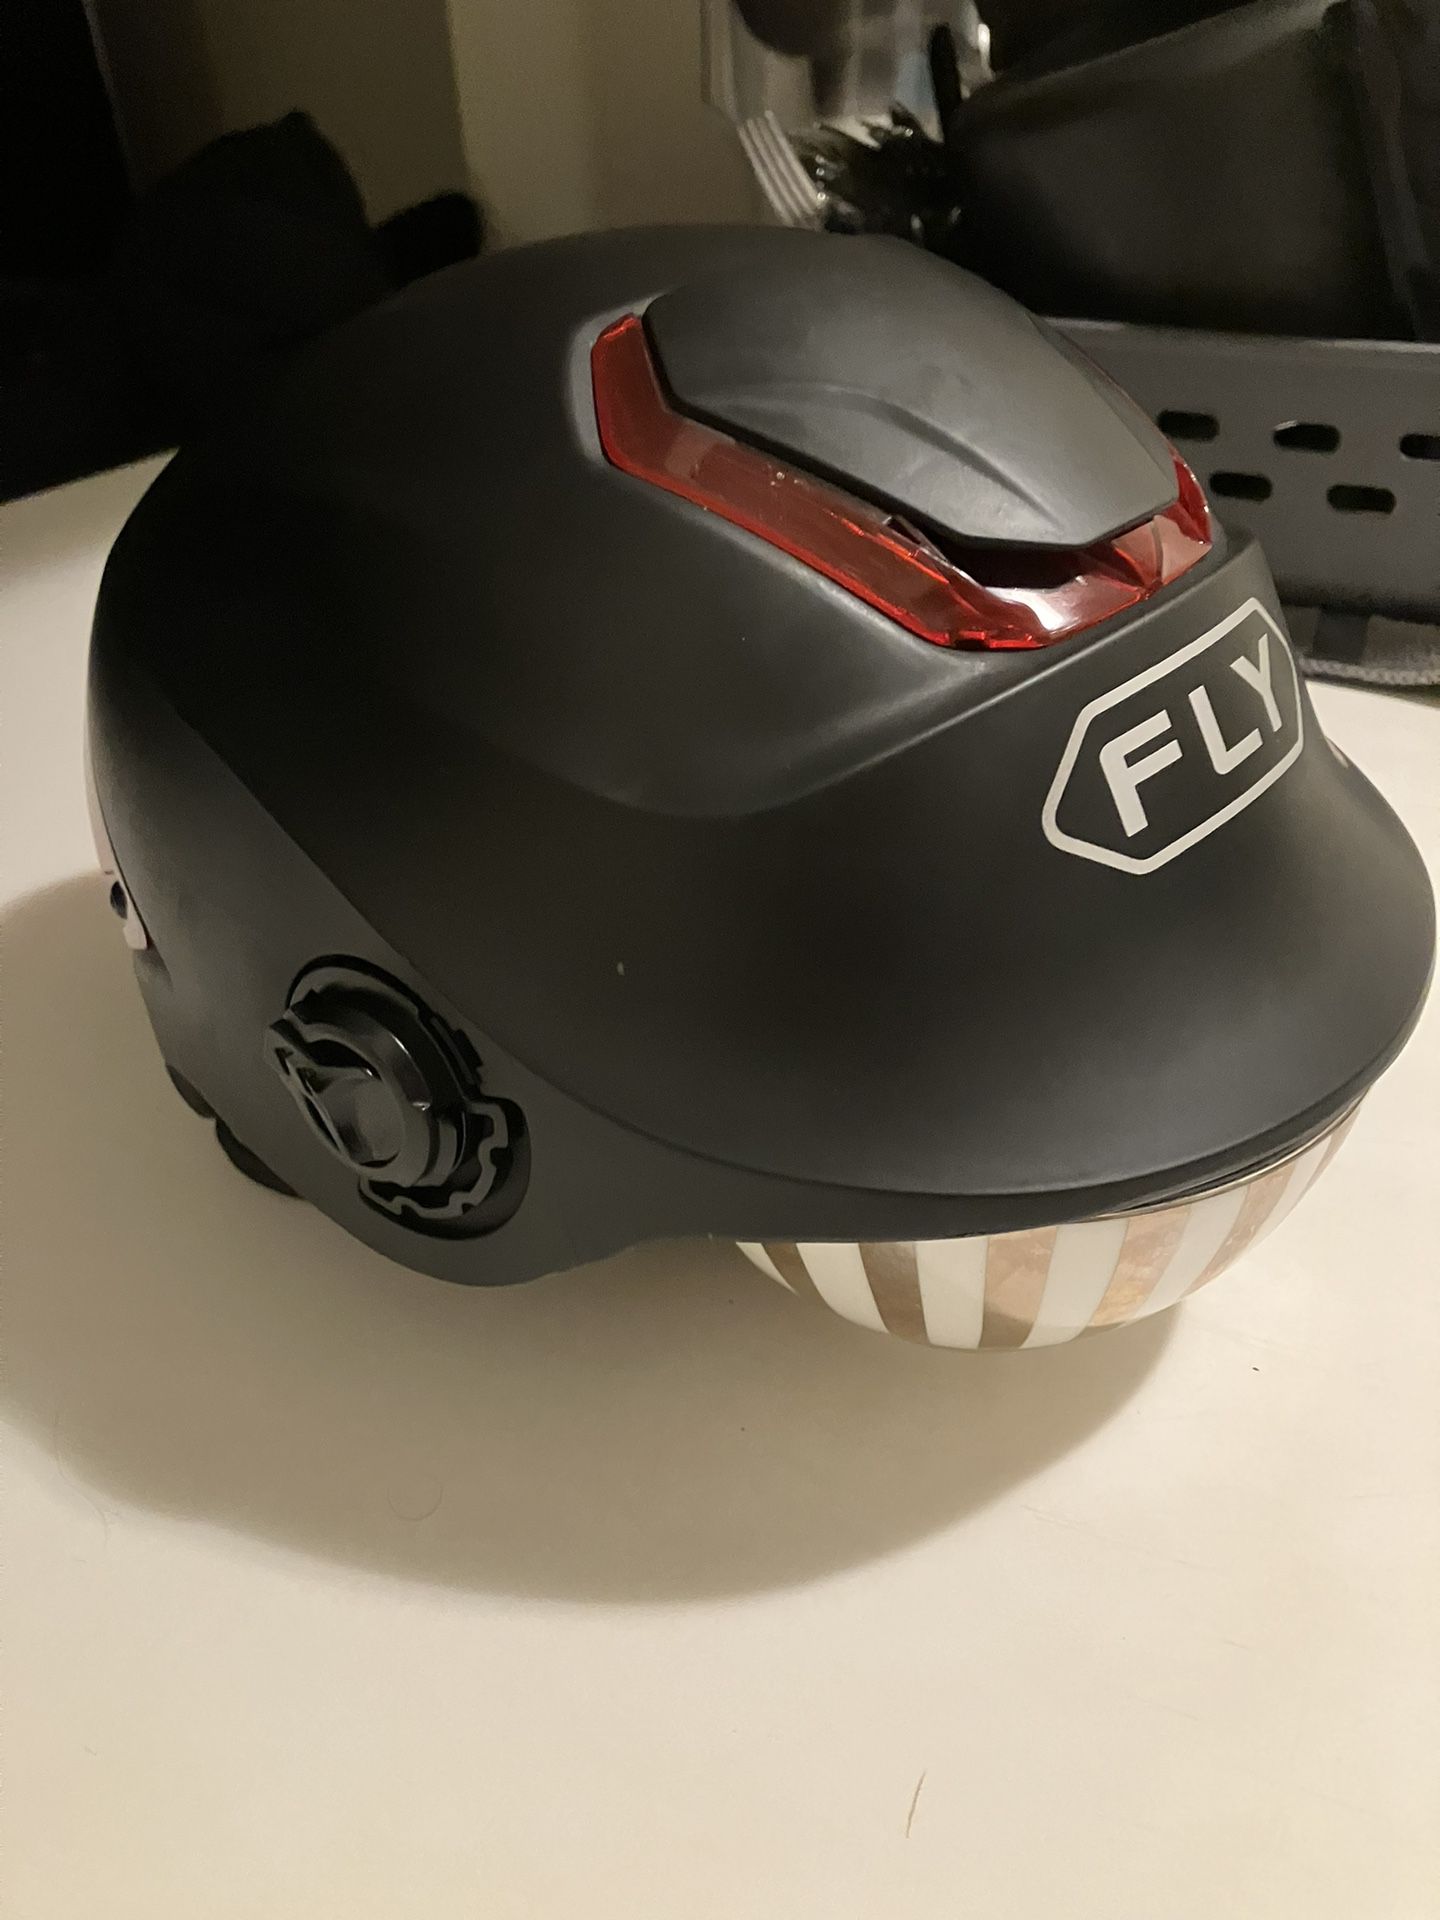 Fly Motorcycle Helmet As New 